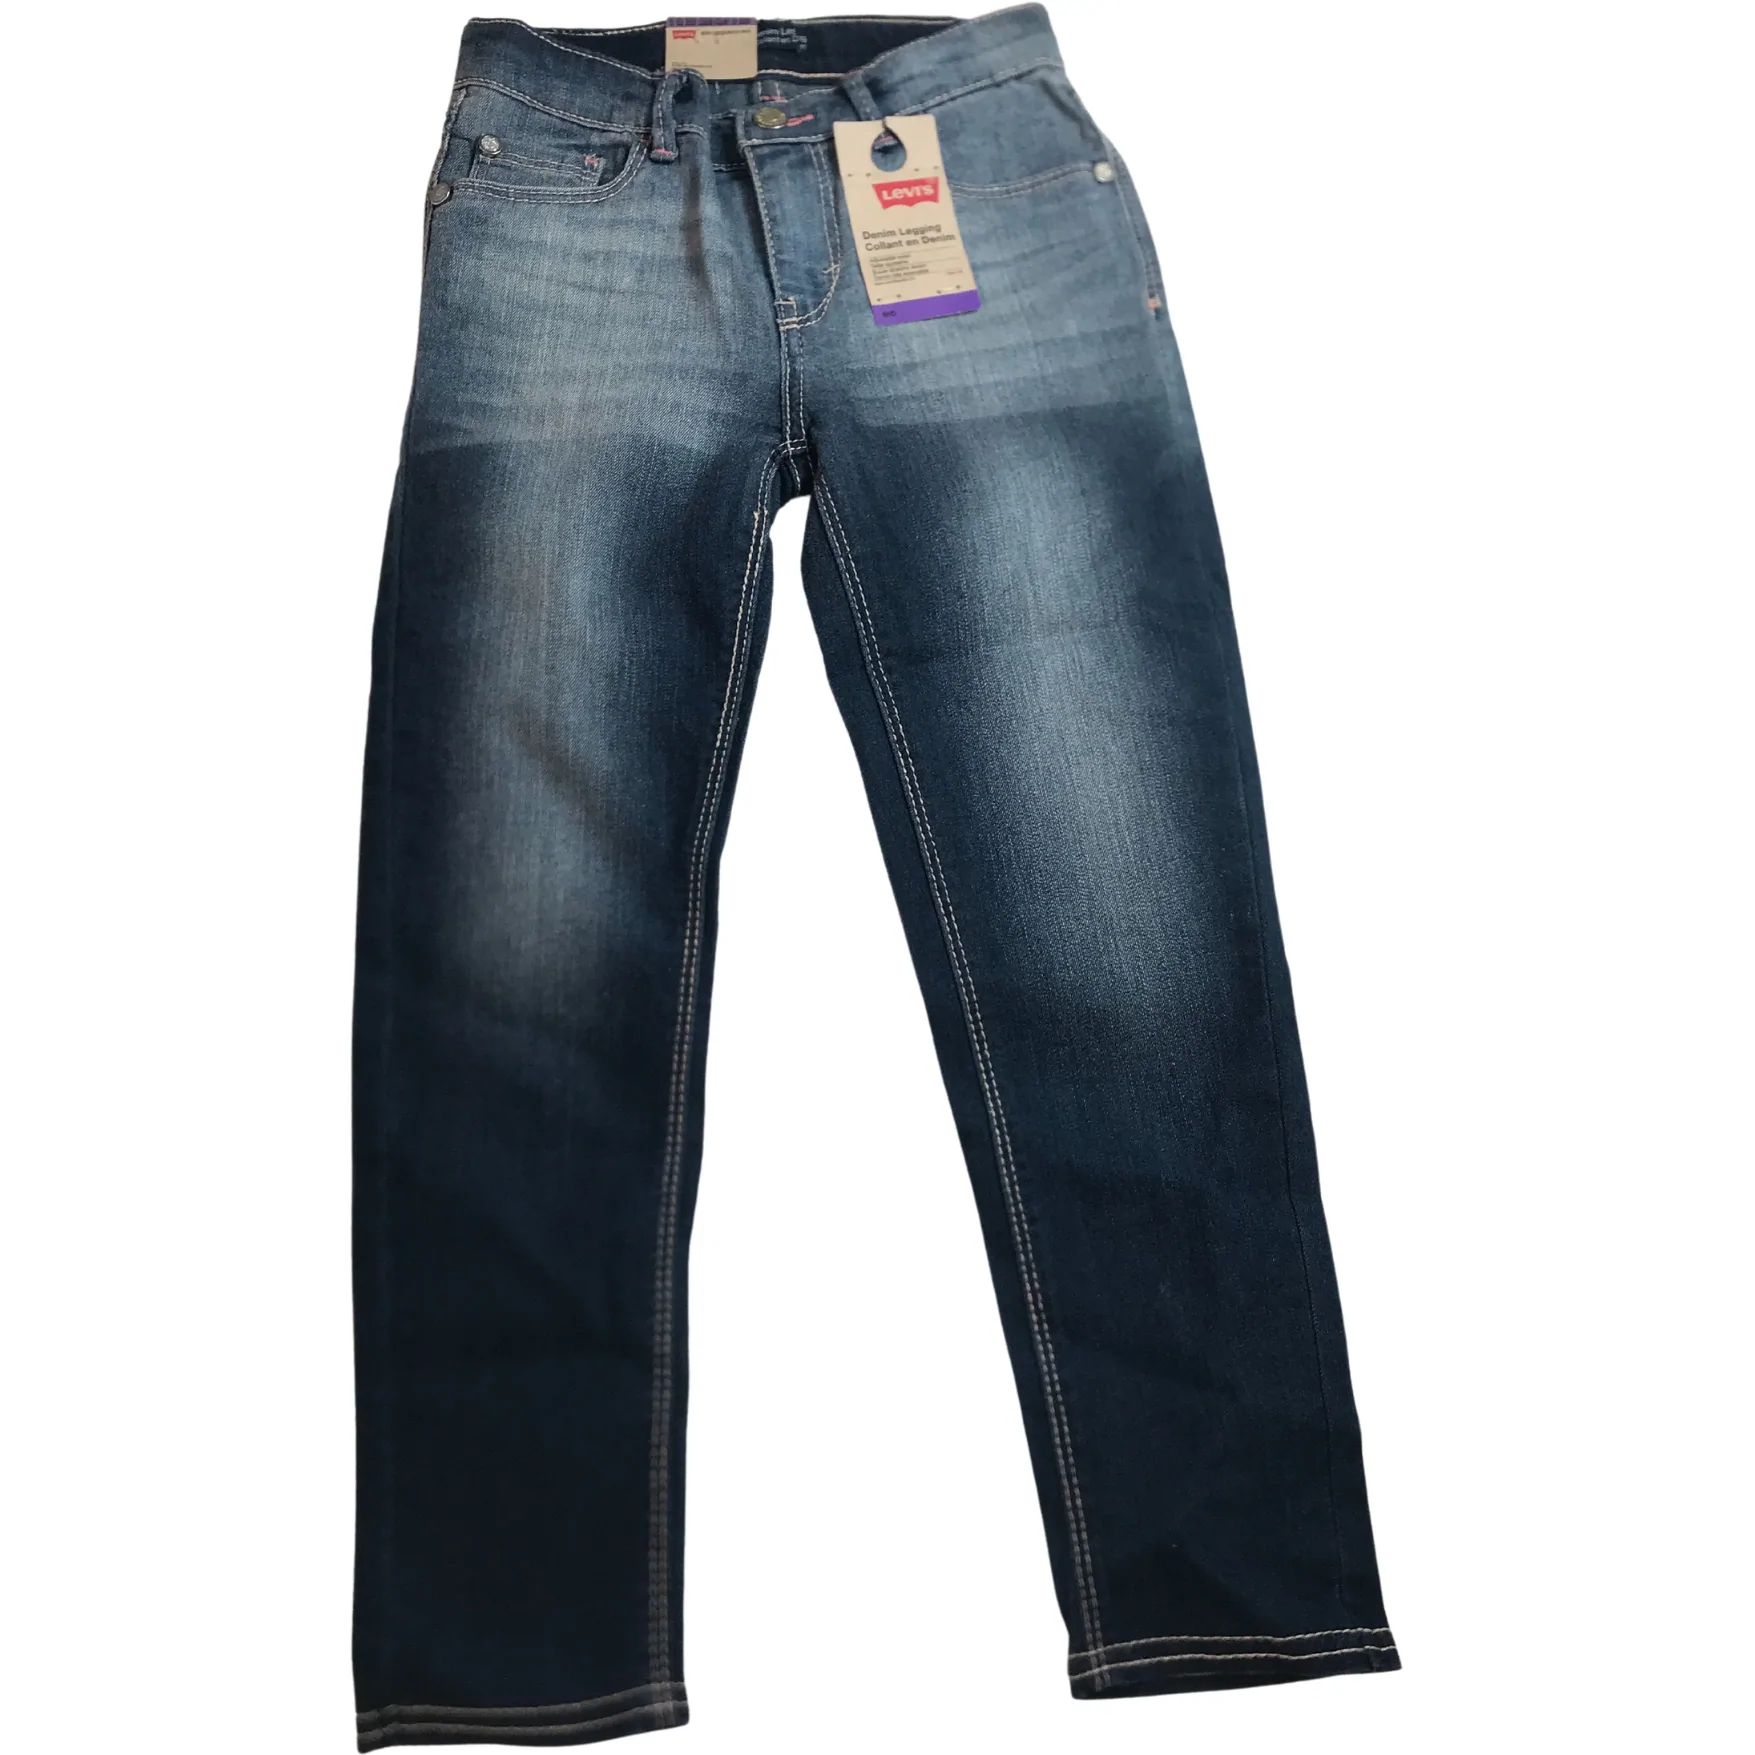 Levi's Girl's Jeans: Denim Legging / Dark Wash / Size 6